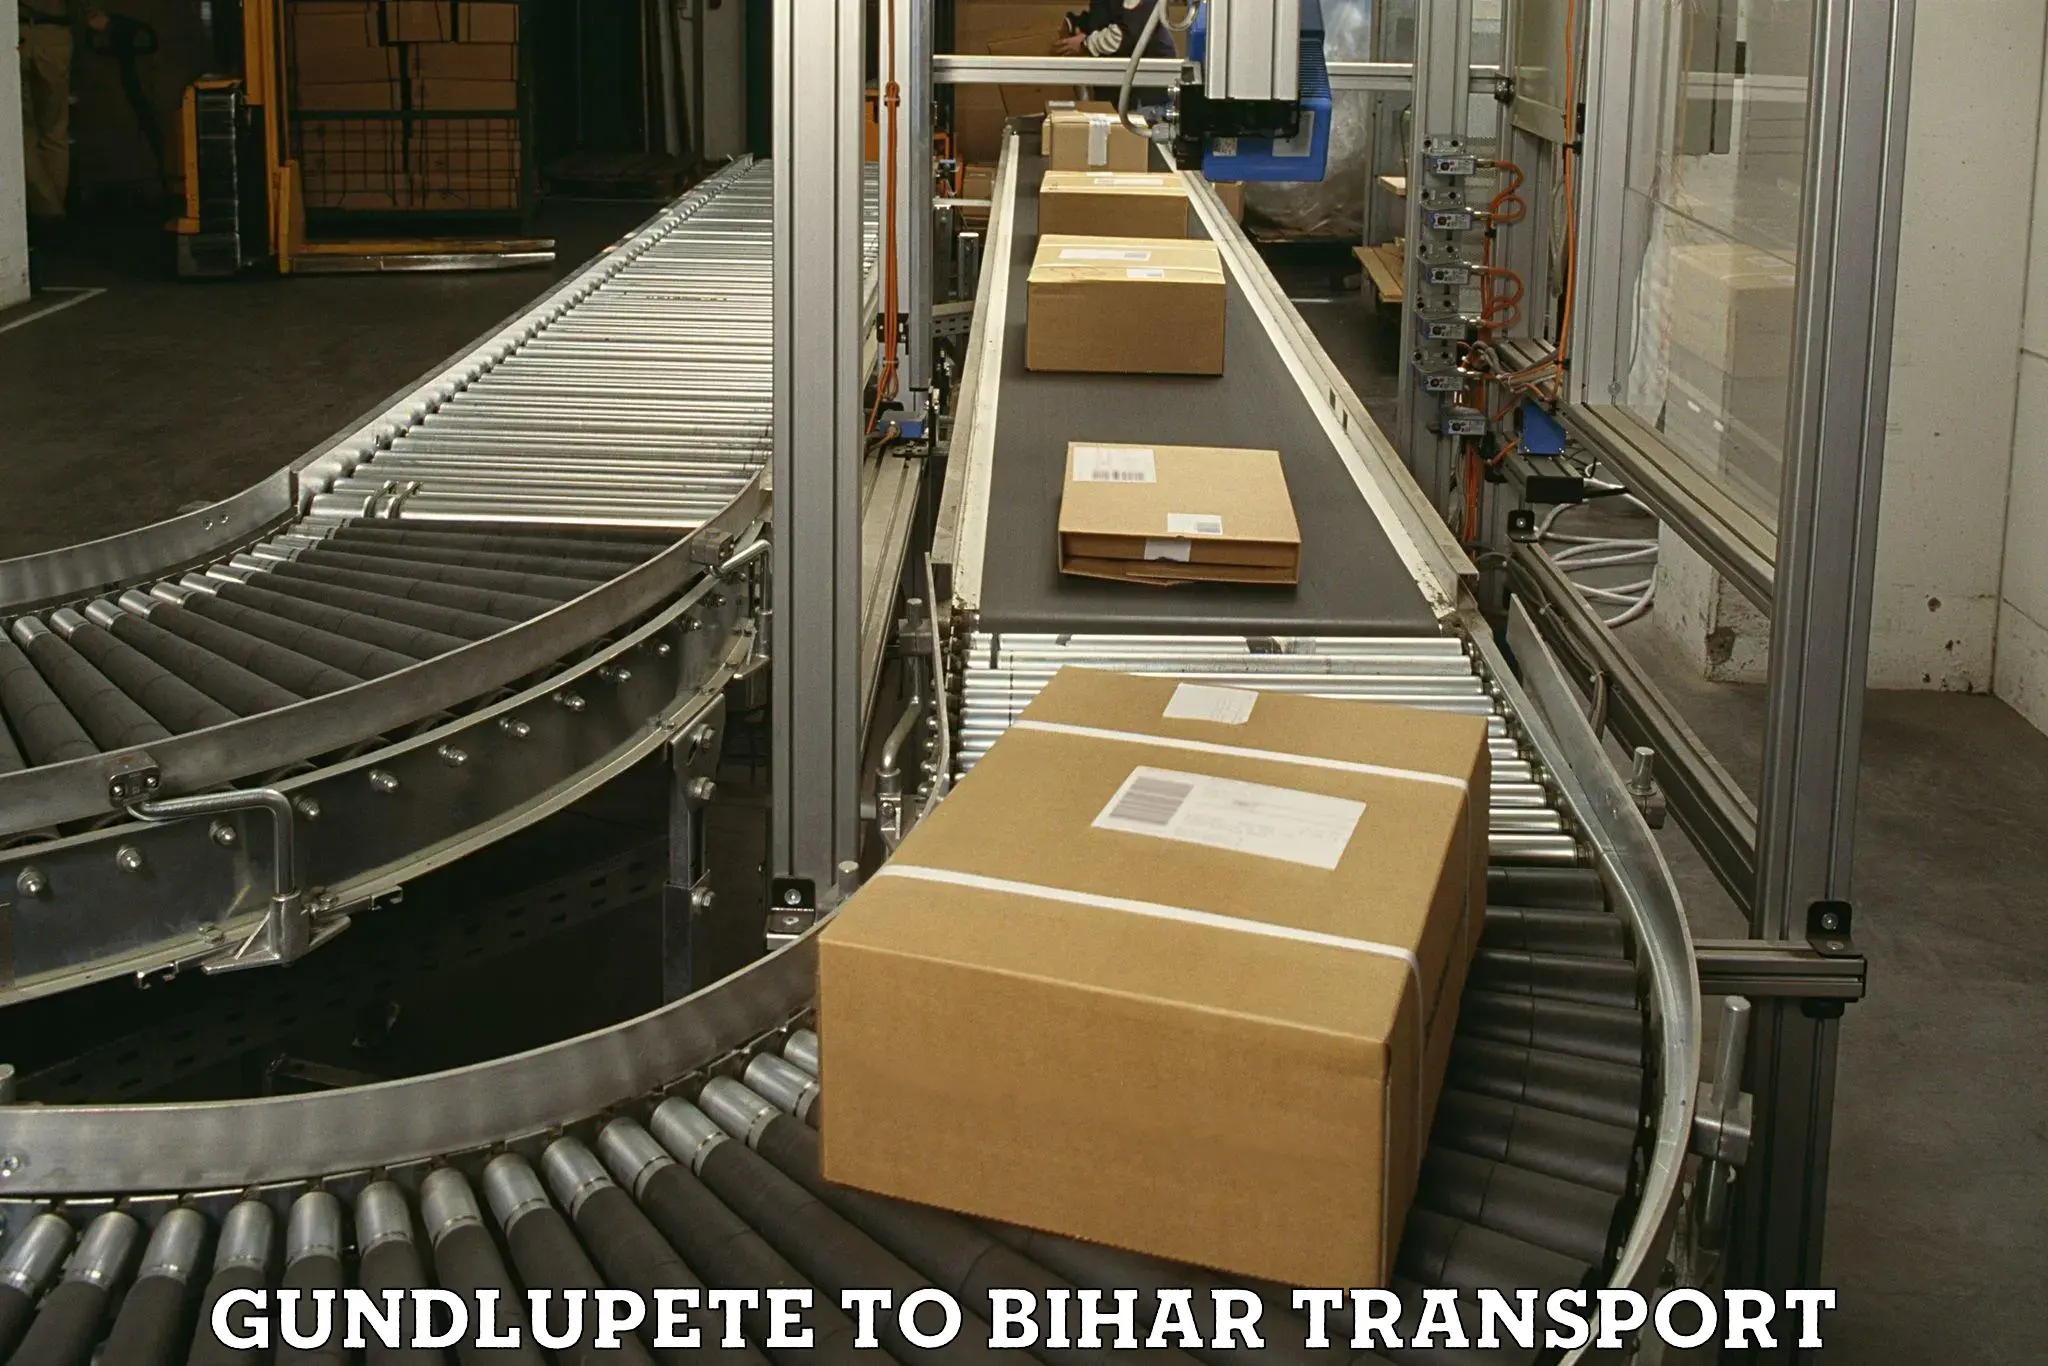 Interstate transport services Gundlupete to Aurangabad Bihar